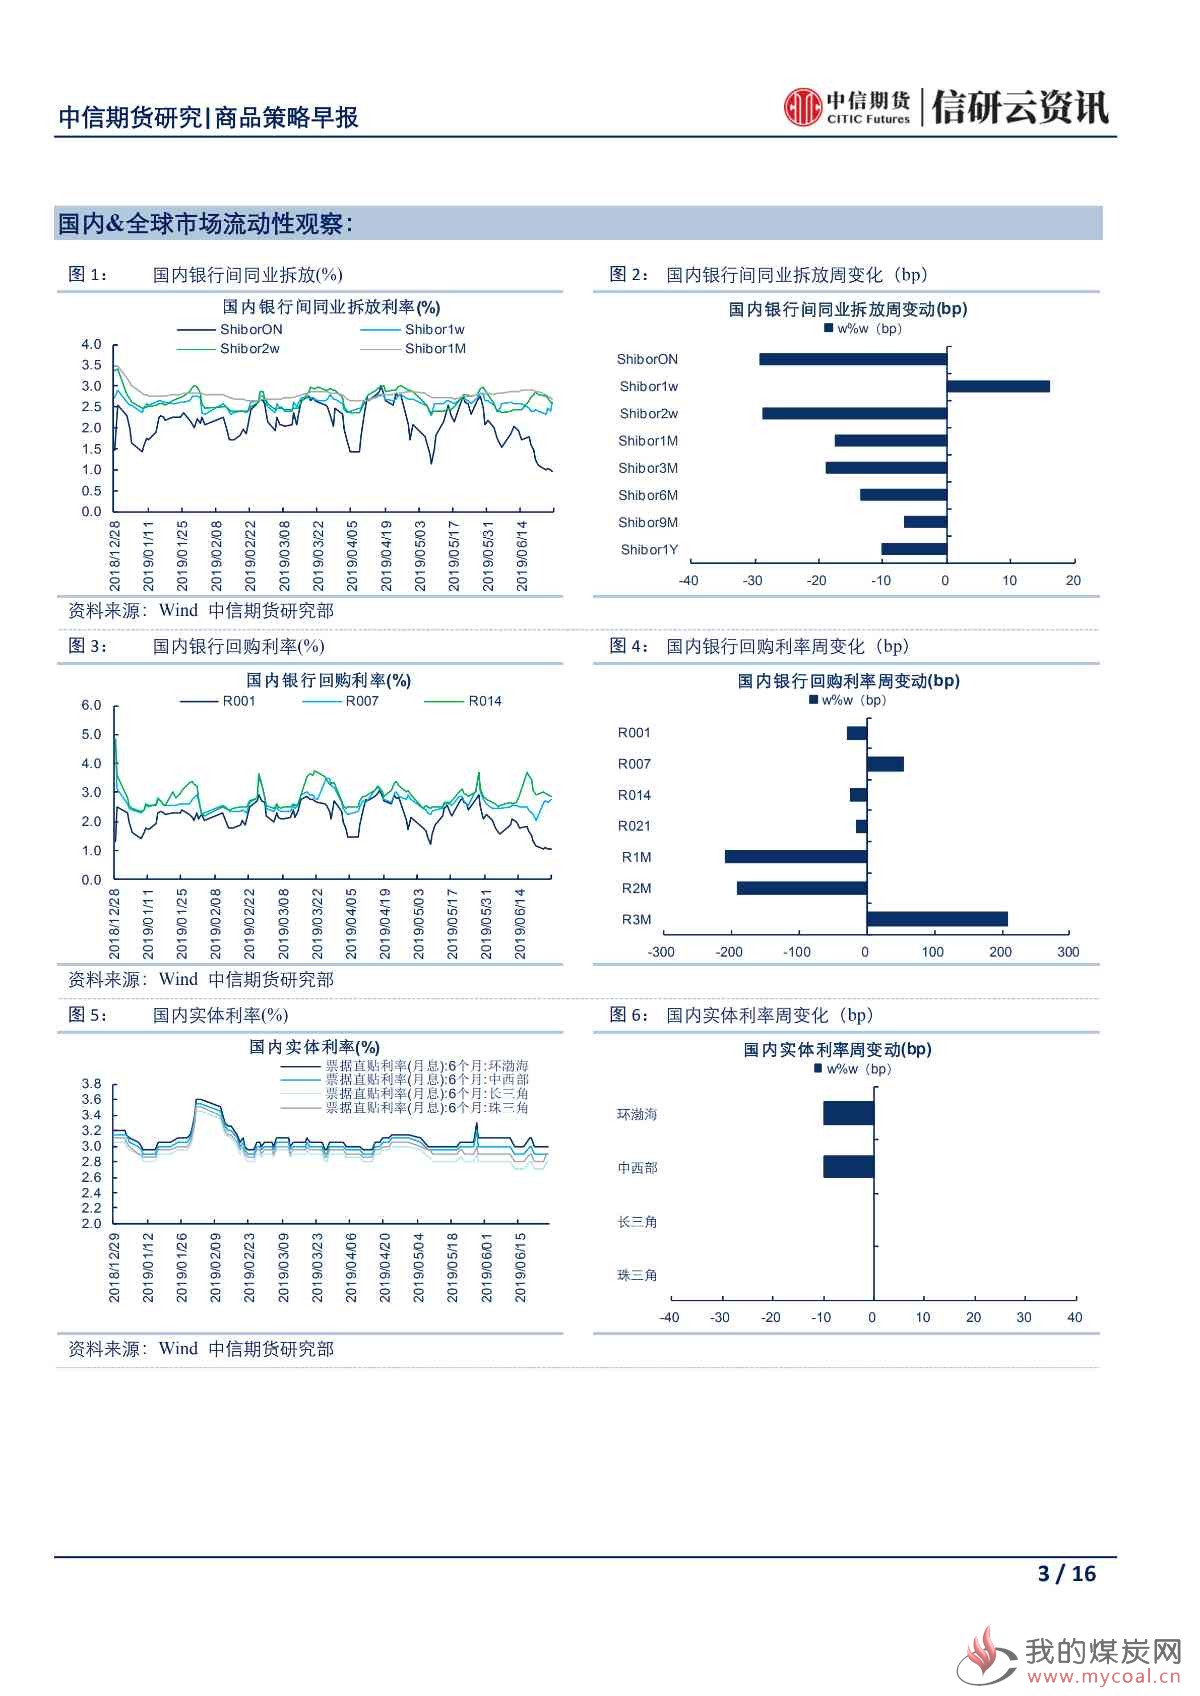 【中信期货宏观】央行再次强调稳健货币政策 市场密切关注日本G20峰会——日报20190628_02